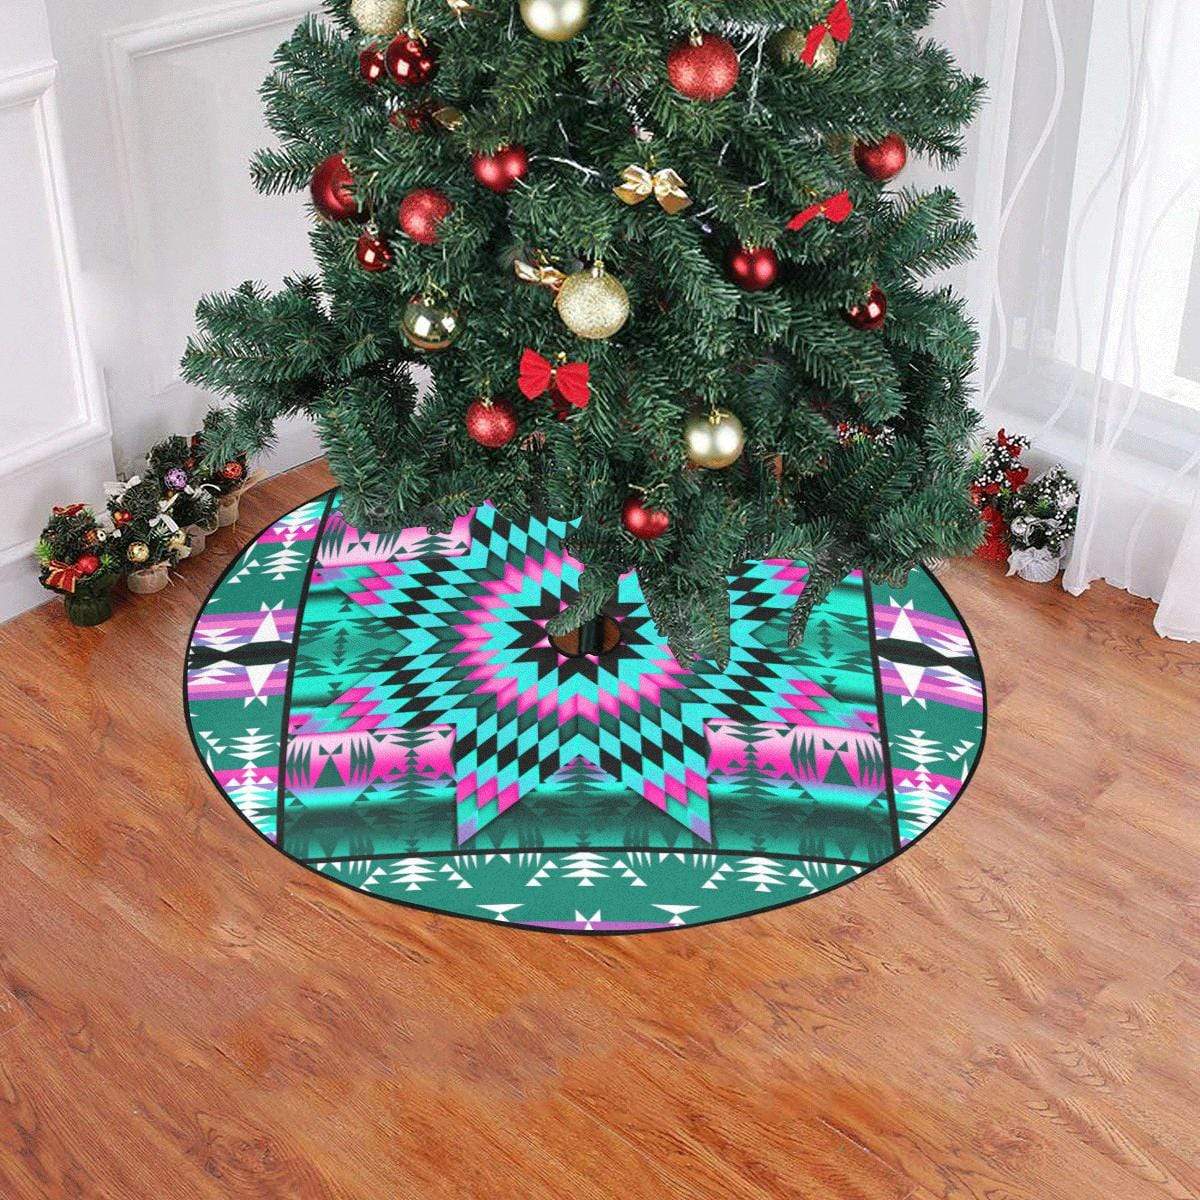 Deep Lake and Sunset Star Christmas Tree Skirt 47" x 47" Christmas Tree Skirt e-joyer 